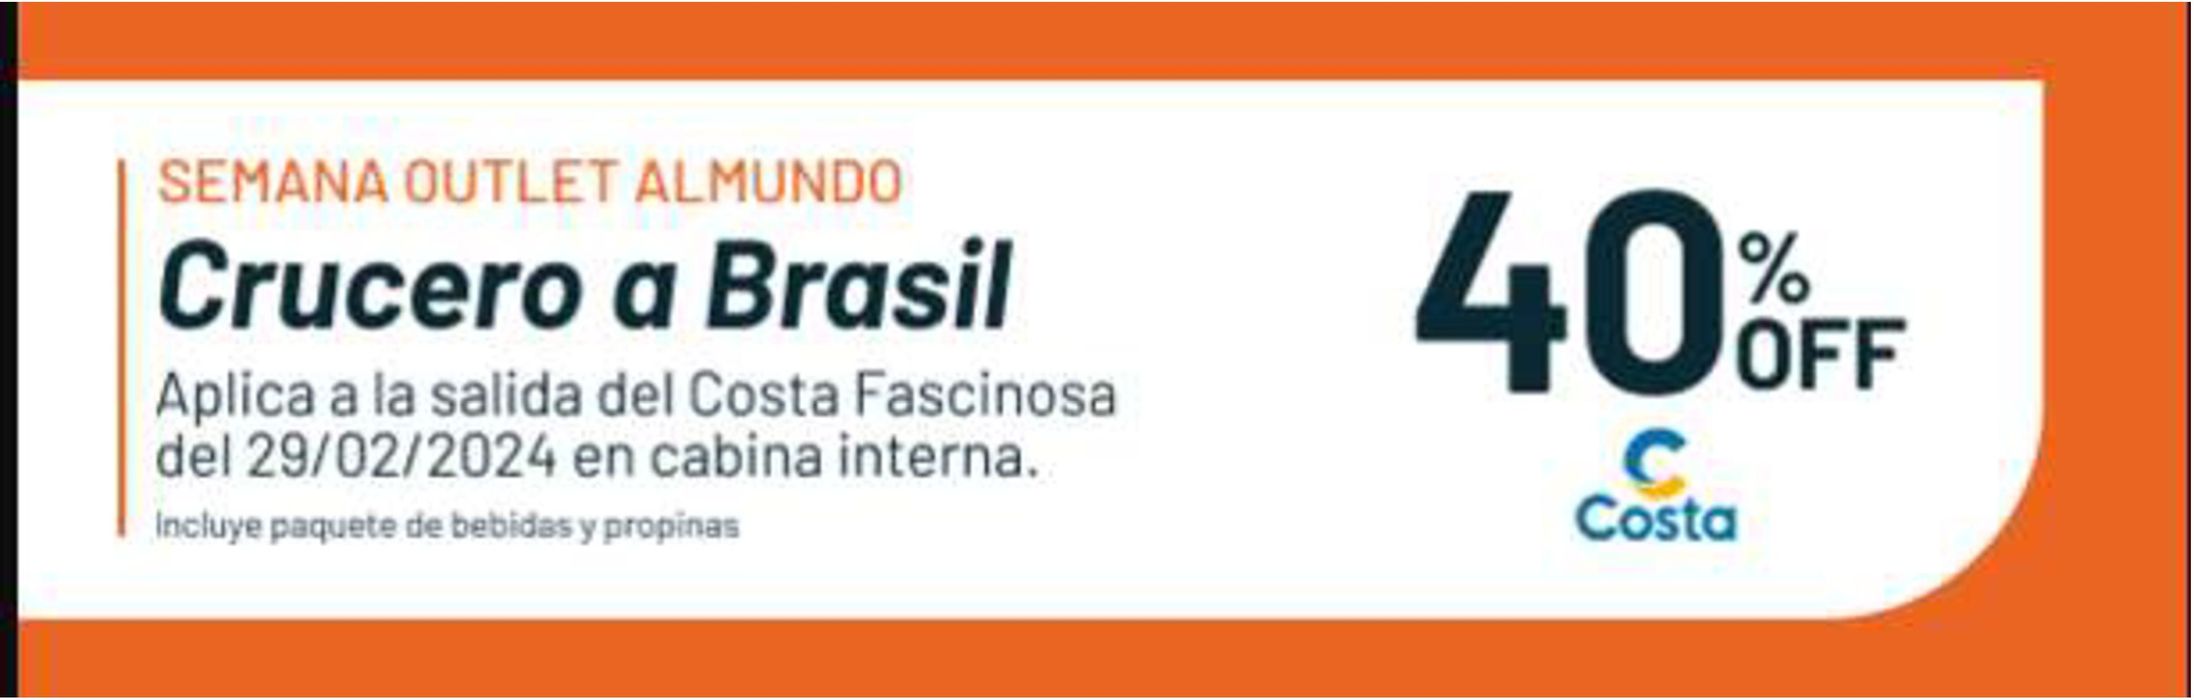 Catálogo Almundo en Mendoza | Crucero a Brasil 40% off | 18/1/2024 - 18/6/2024